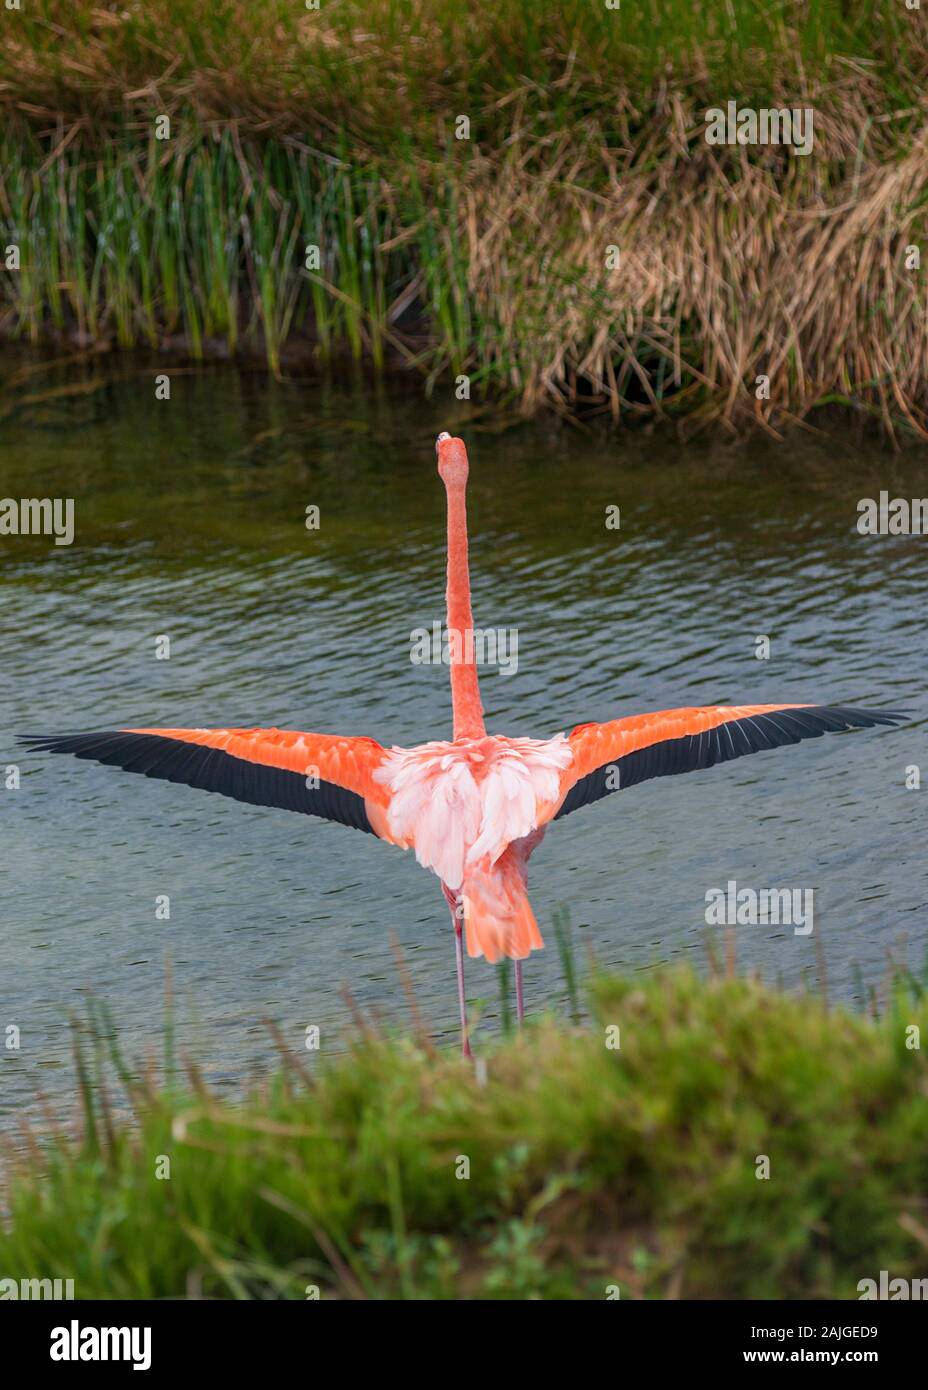 Greater Flamingo stretching its wings at Punta Moreno, Isabela island, Galapagos, Ecuador. Stock Photo